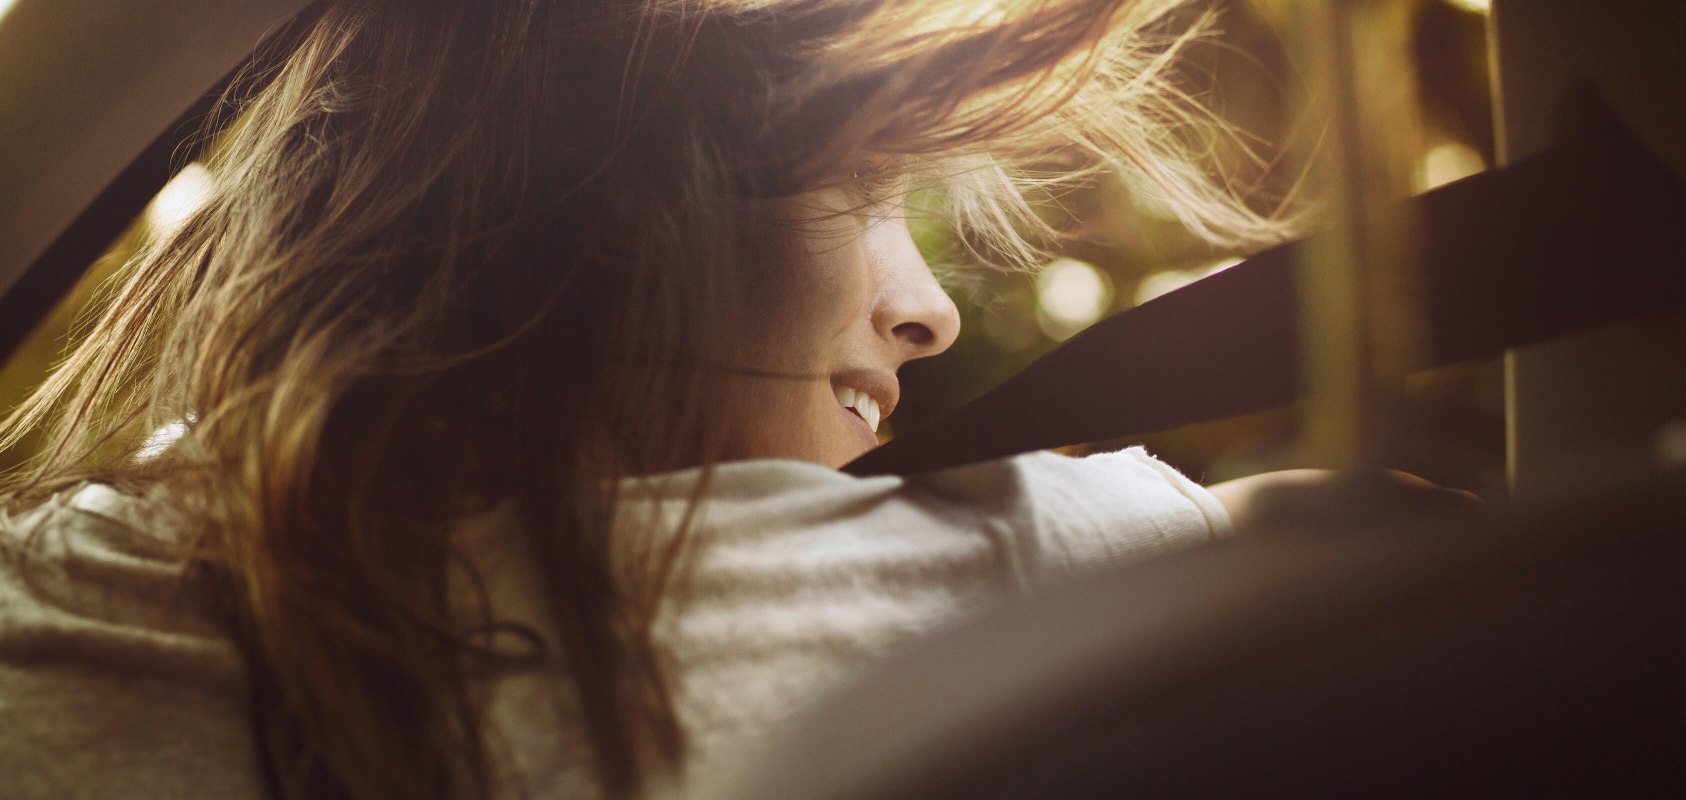 Testa di donna vista da dietro e con i capelli scompigliati dal vento - SEAT Easy Mobility